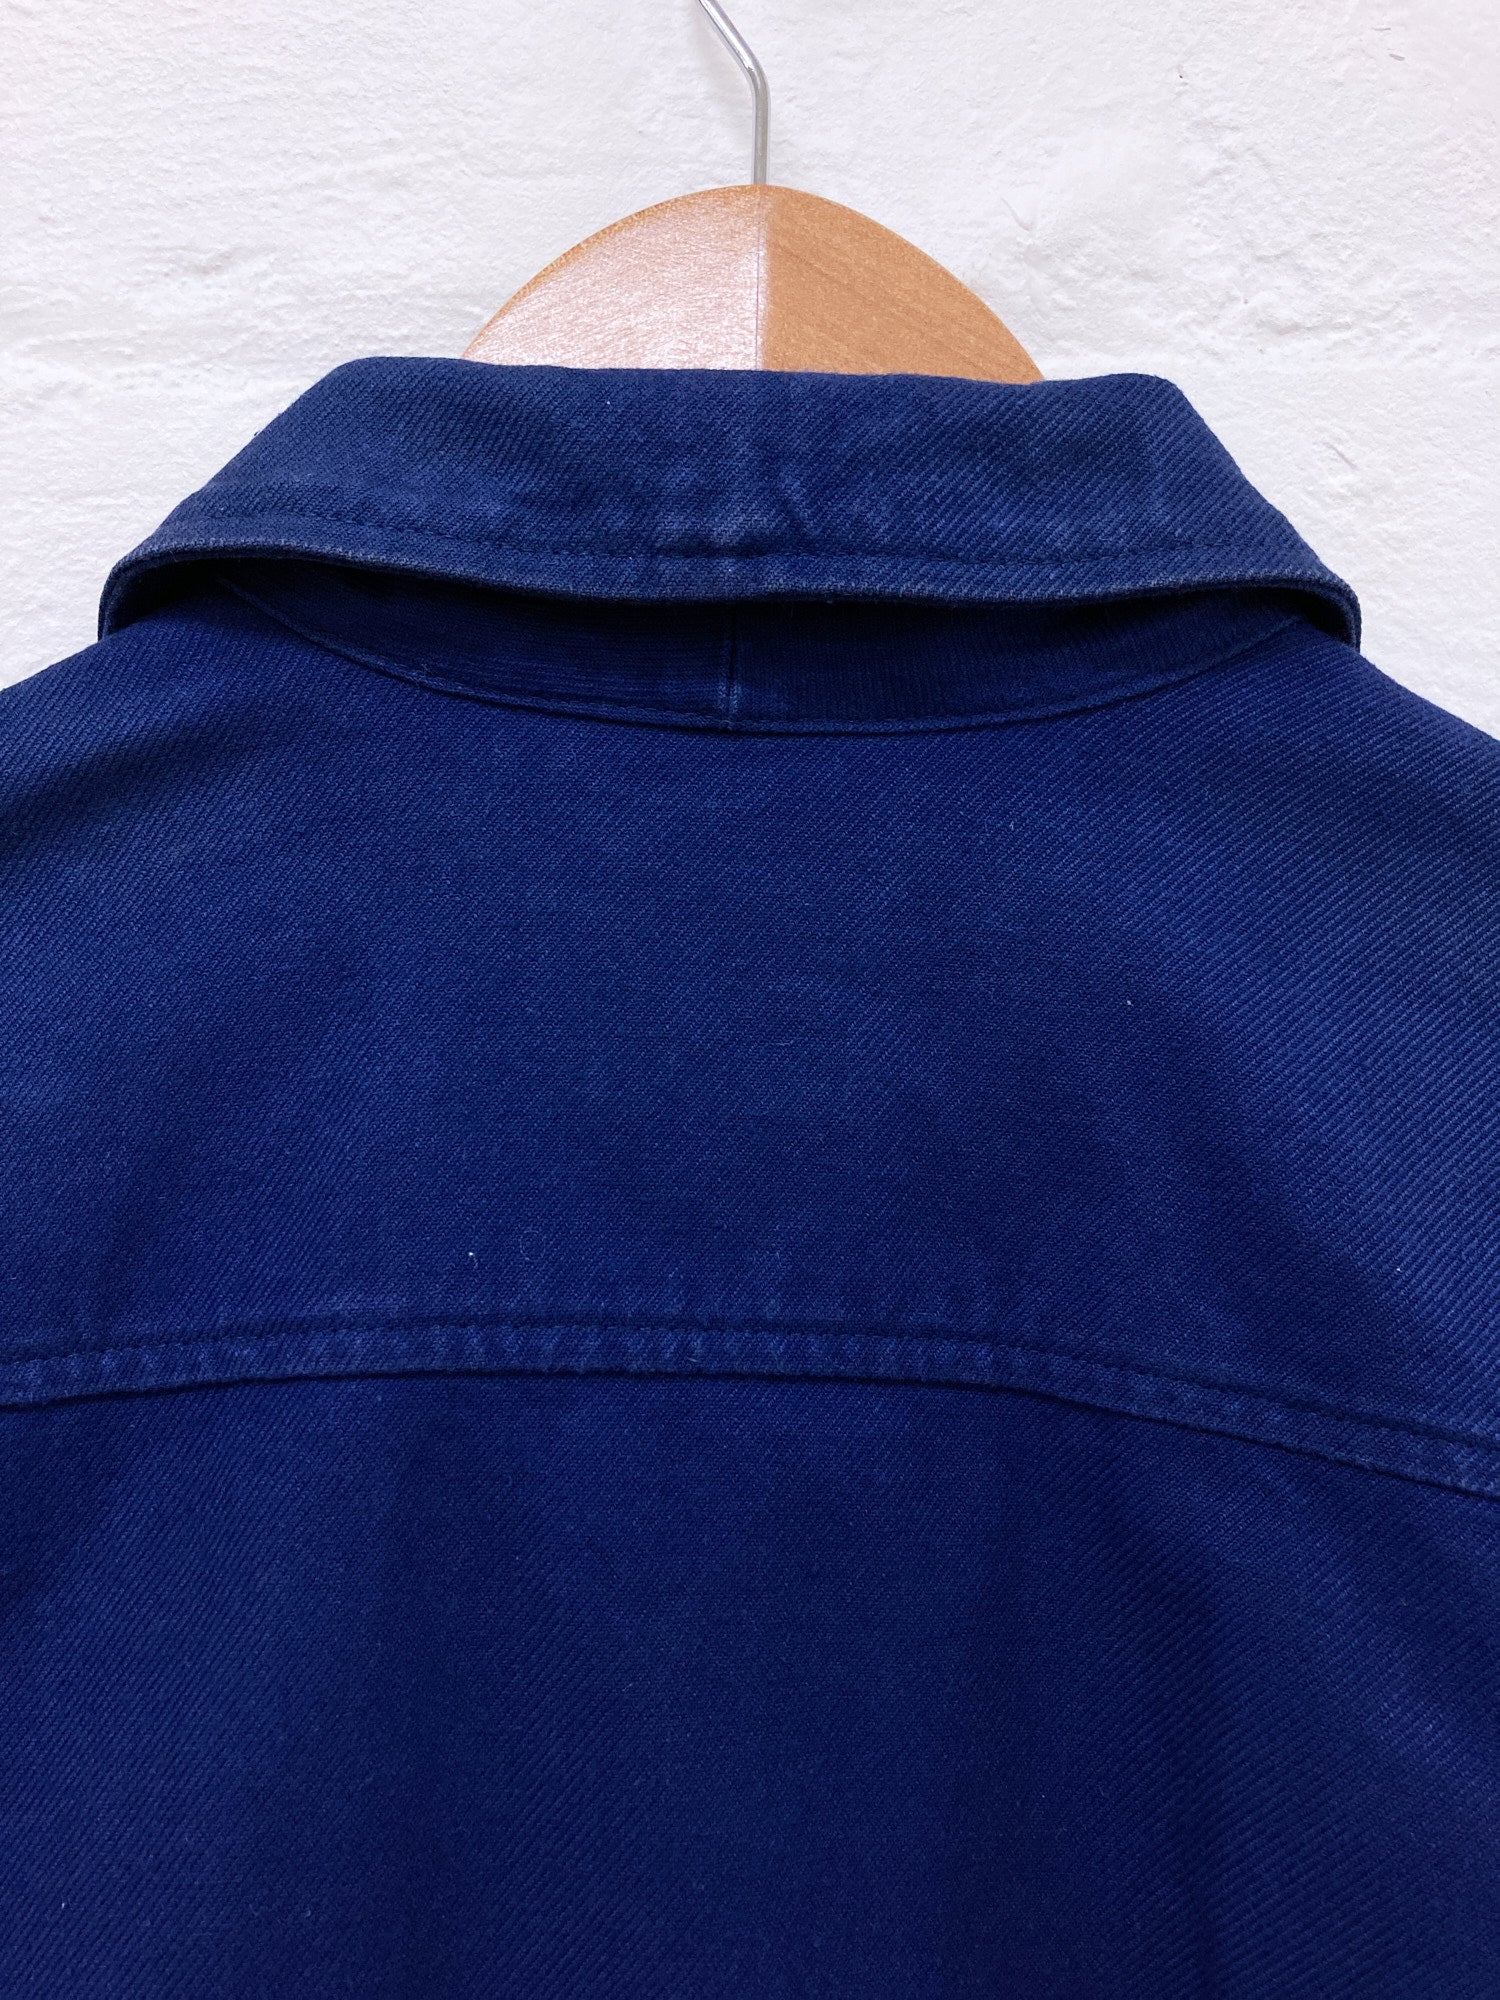 Jose Levy a Paris 1990s blue cotton work jacket - size M S